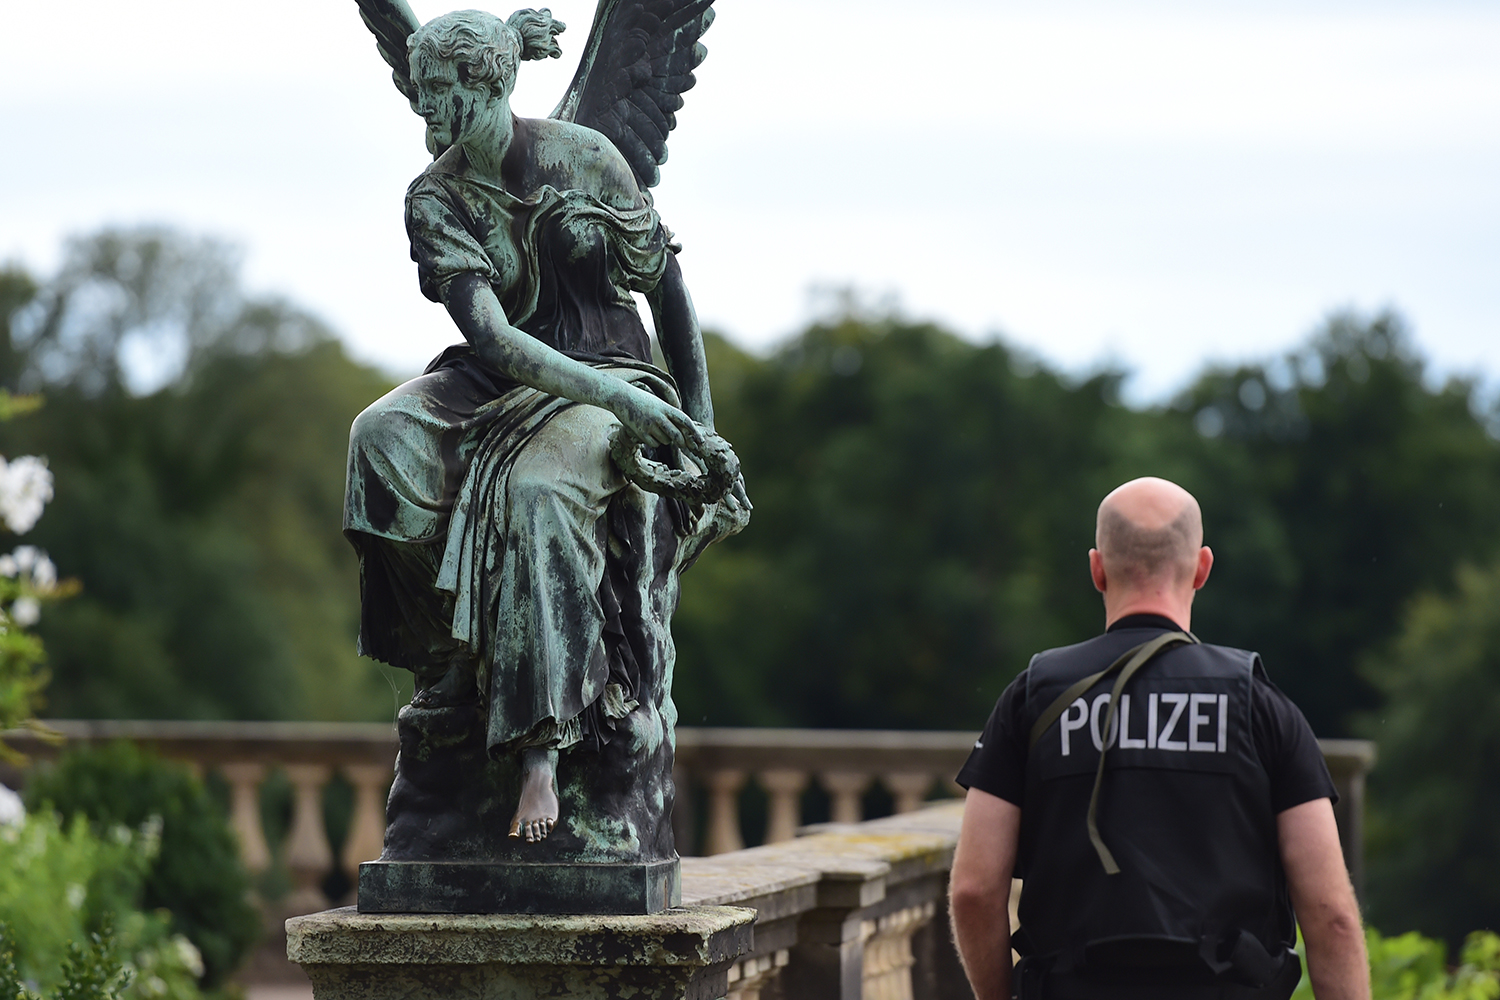 La policia de Berlín mata a tiros a un islamista que apuñaló a una agente. #7dias